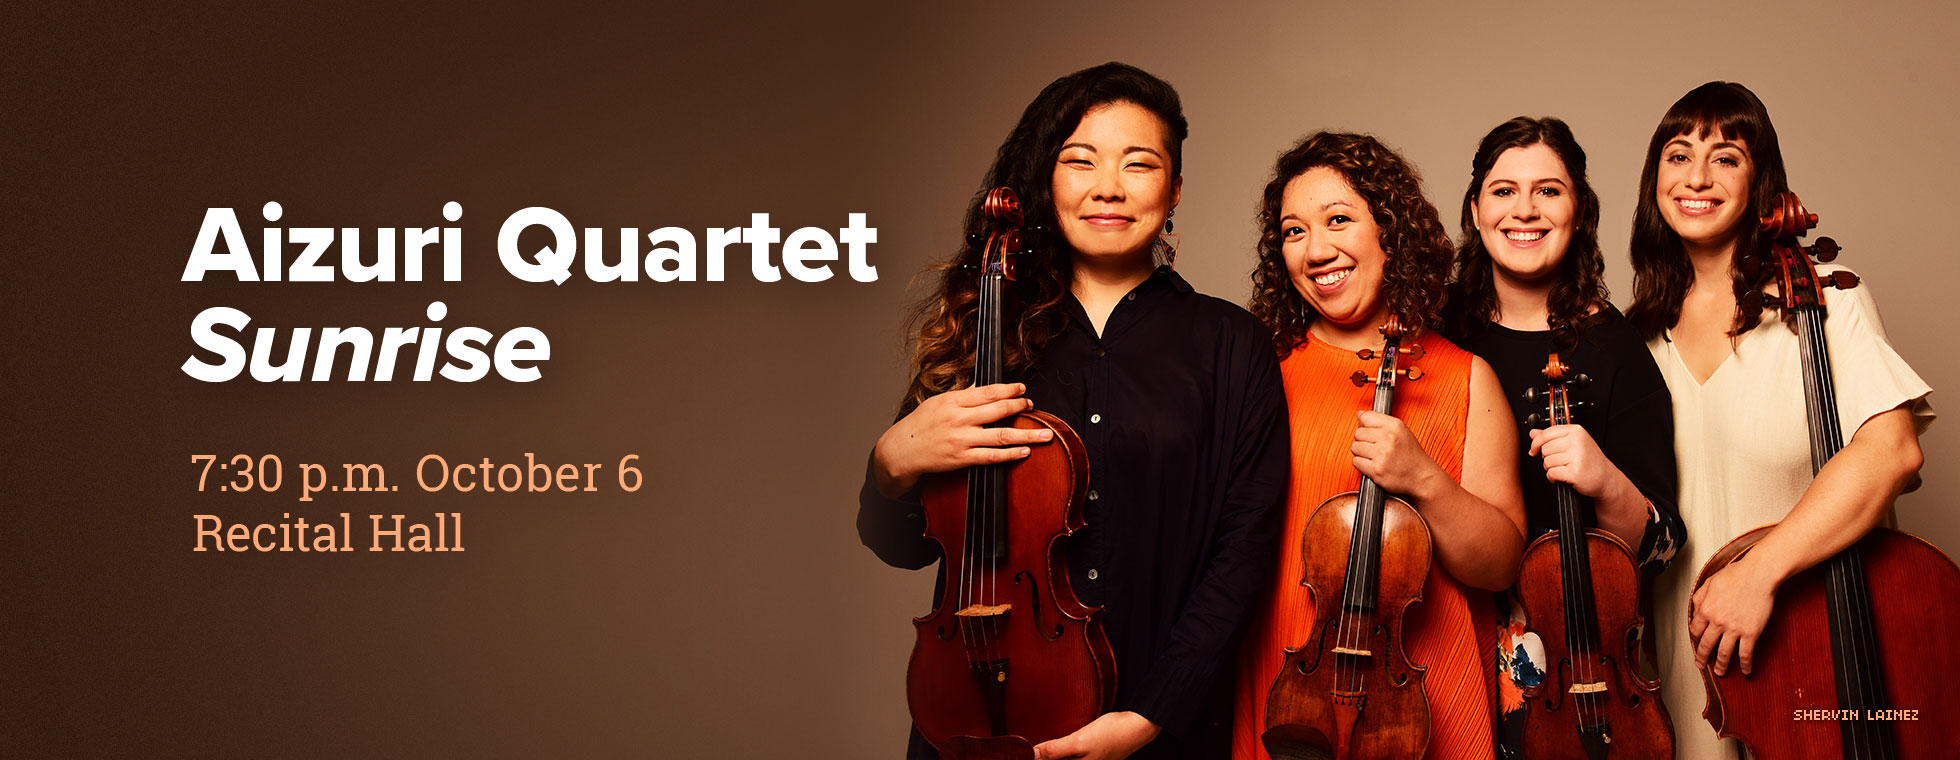 Aizuri Quartet performs Sunrise at 7:30 p.m. October 6 in Recital Hall